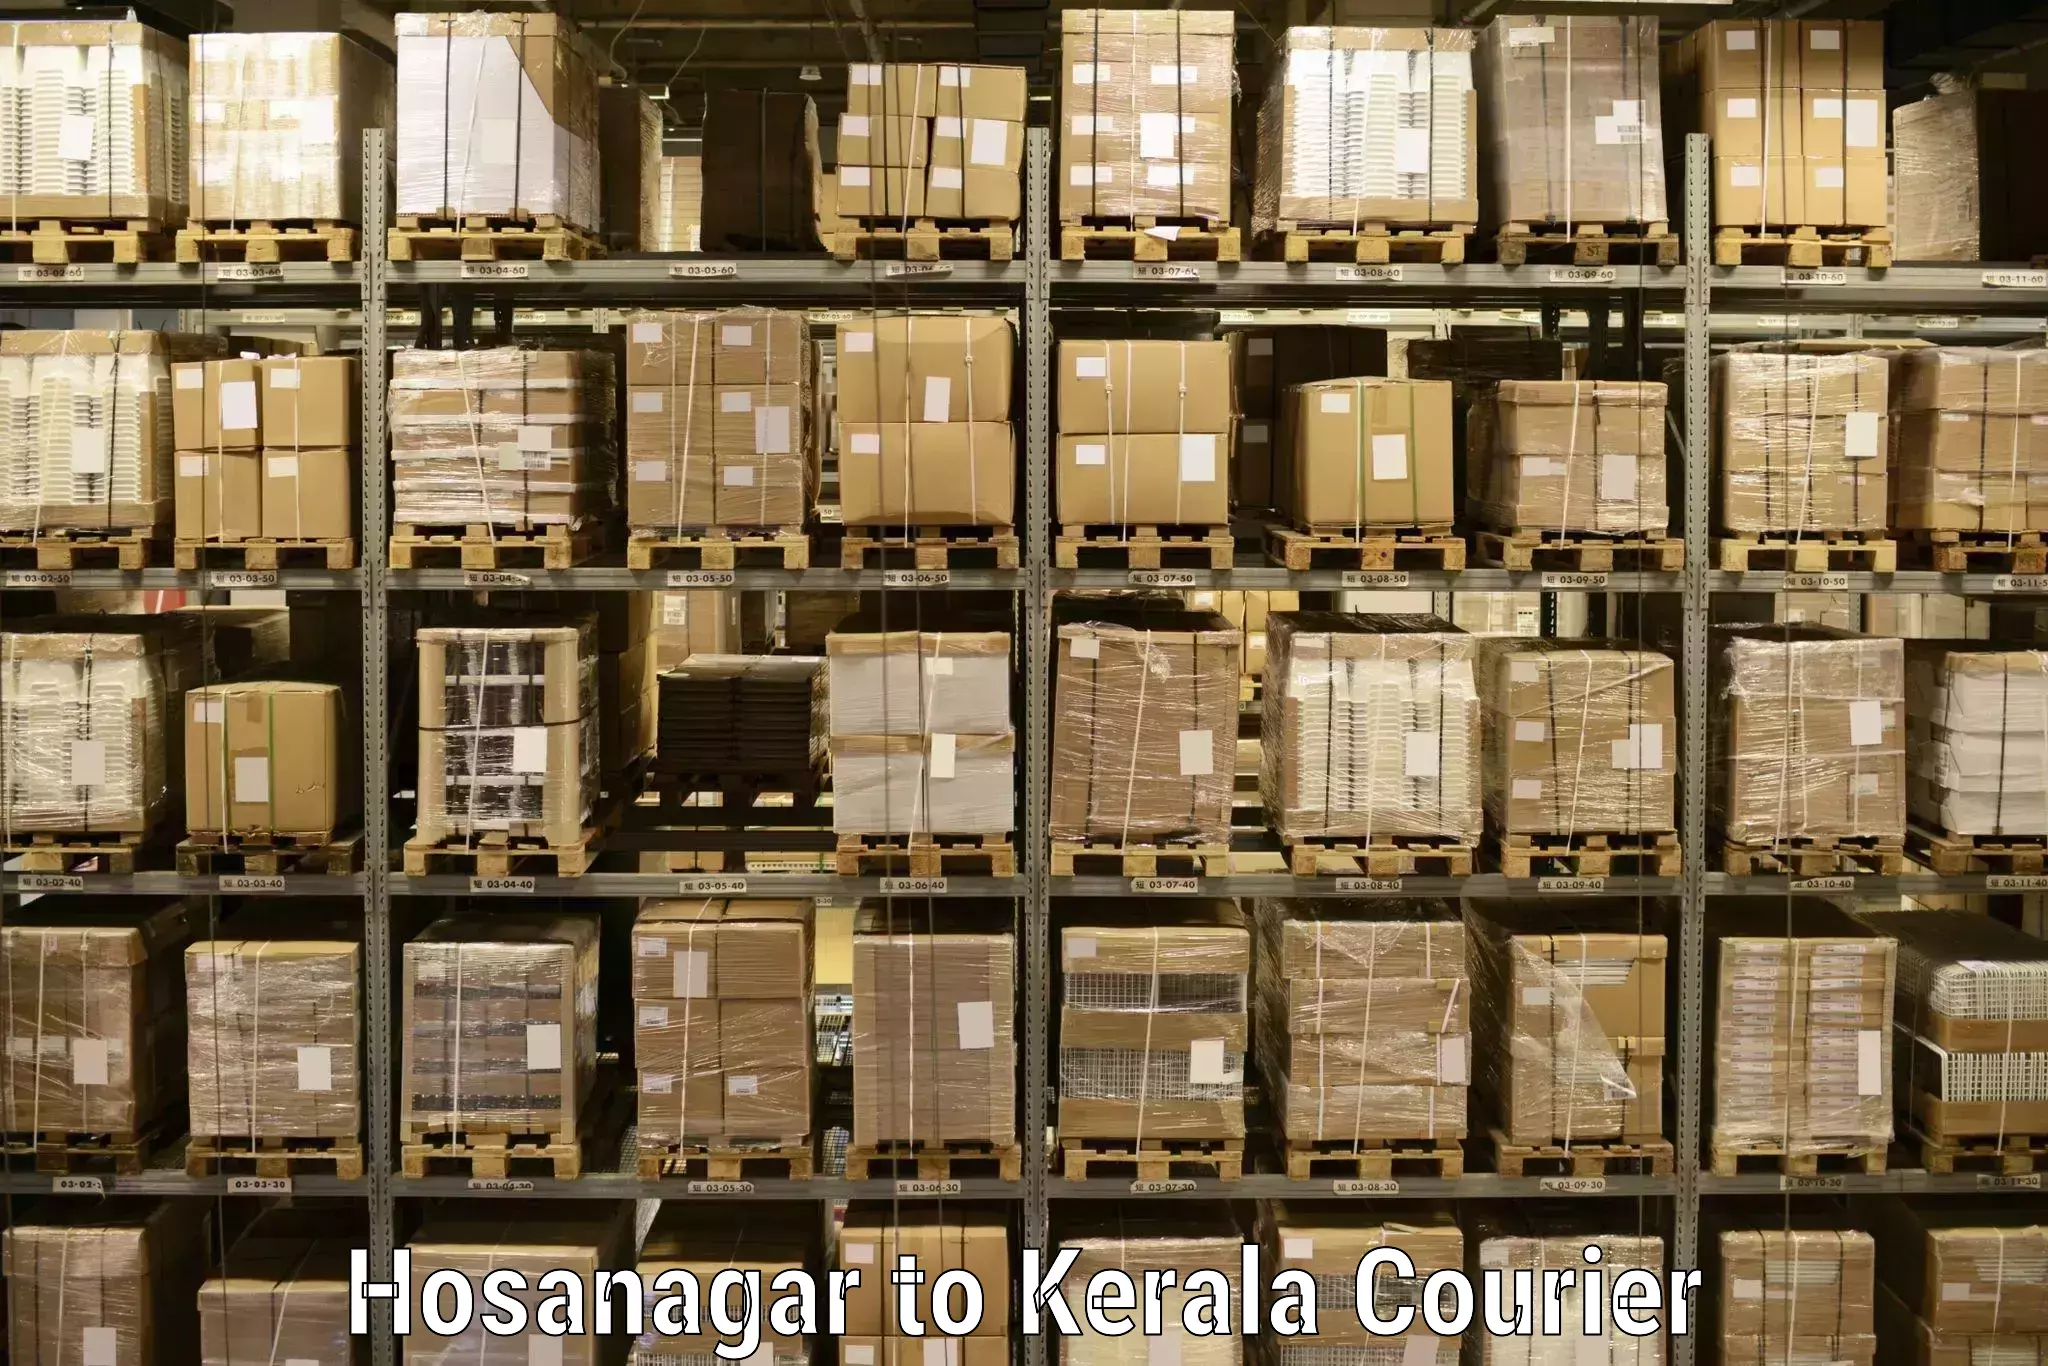 24-hour courier service Hosanagar to Kottayam